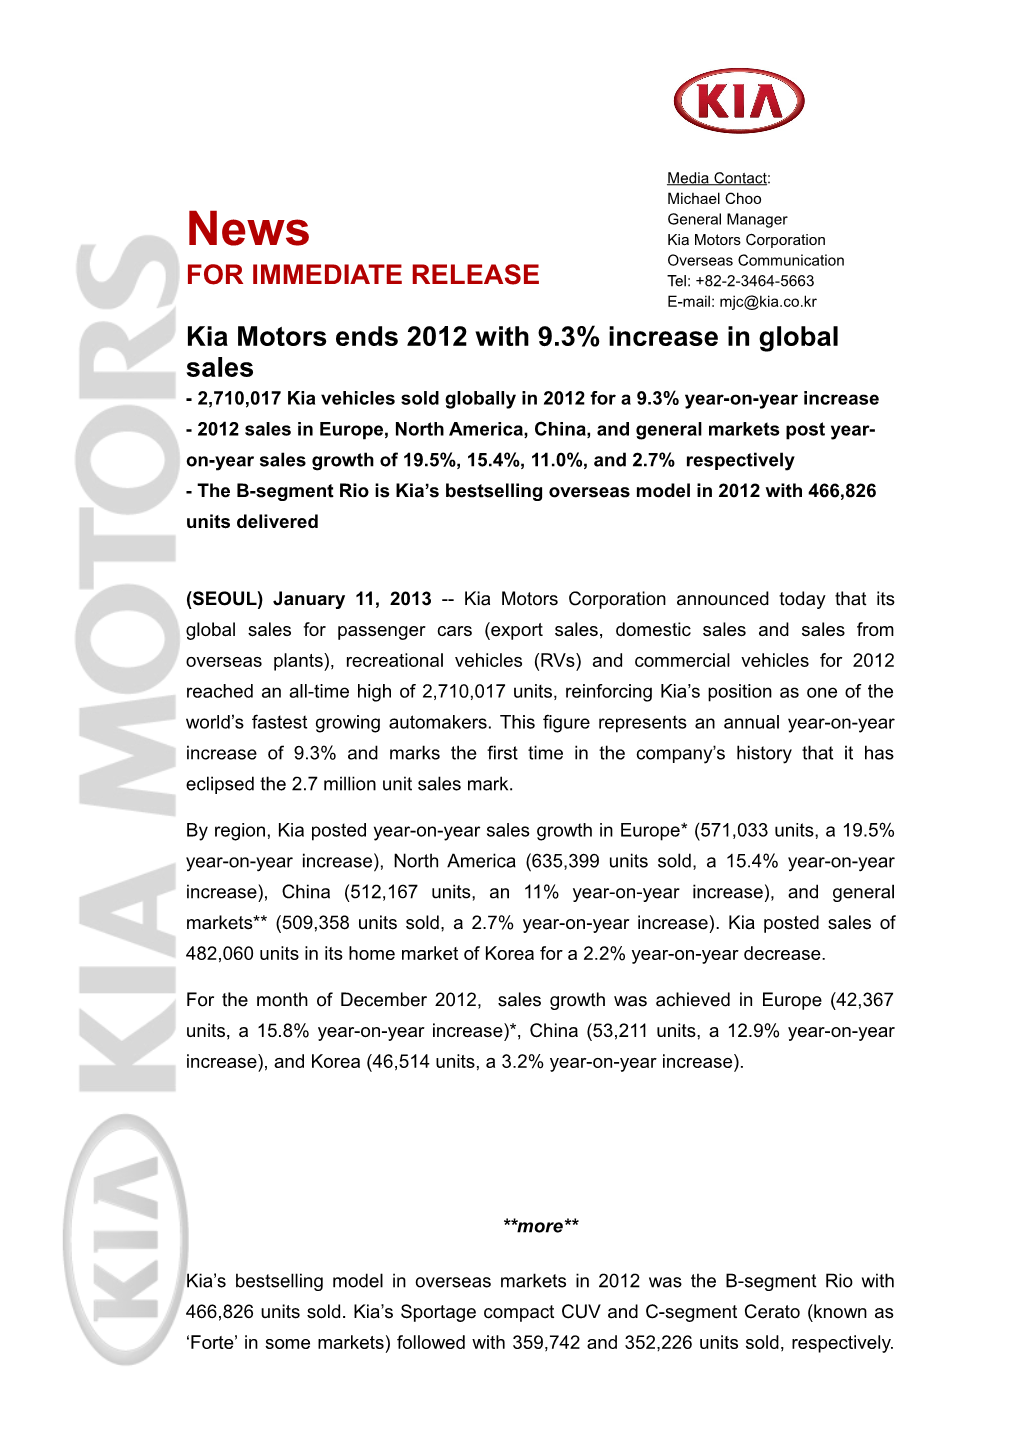 Kia Motors Ends 2012 with 9.3% Increase in Global Sales